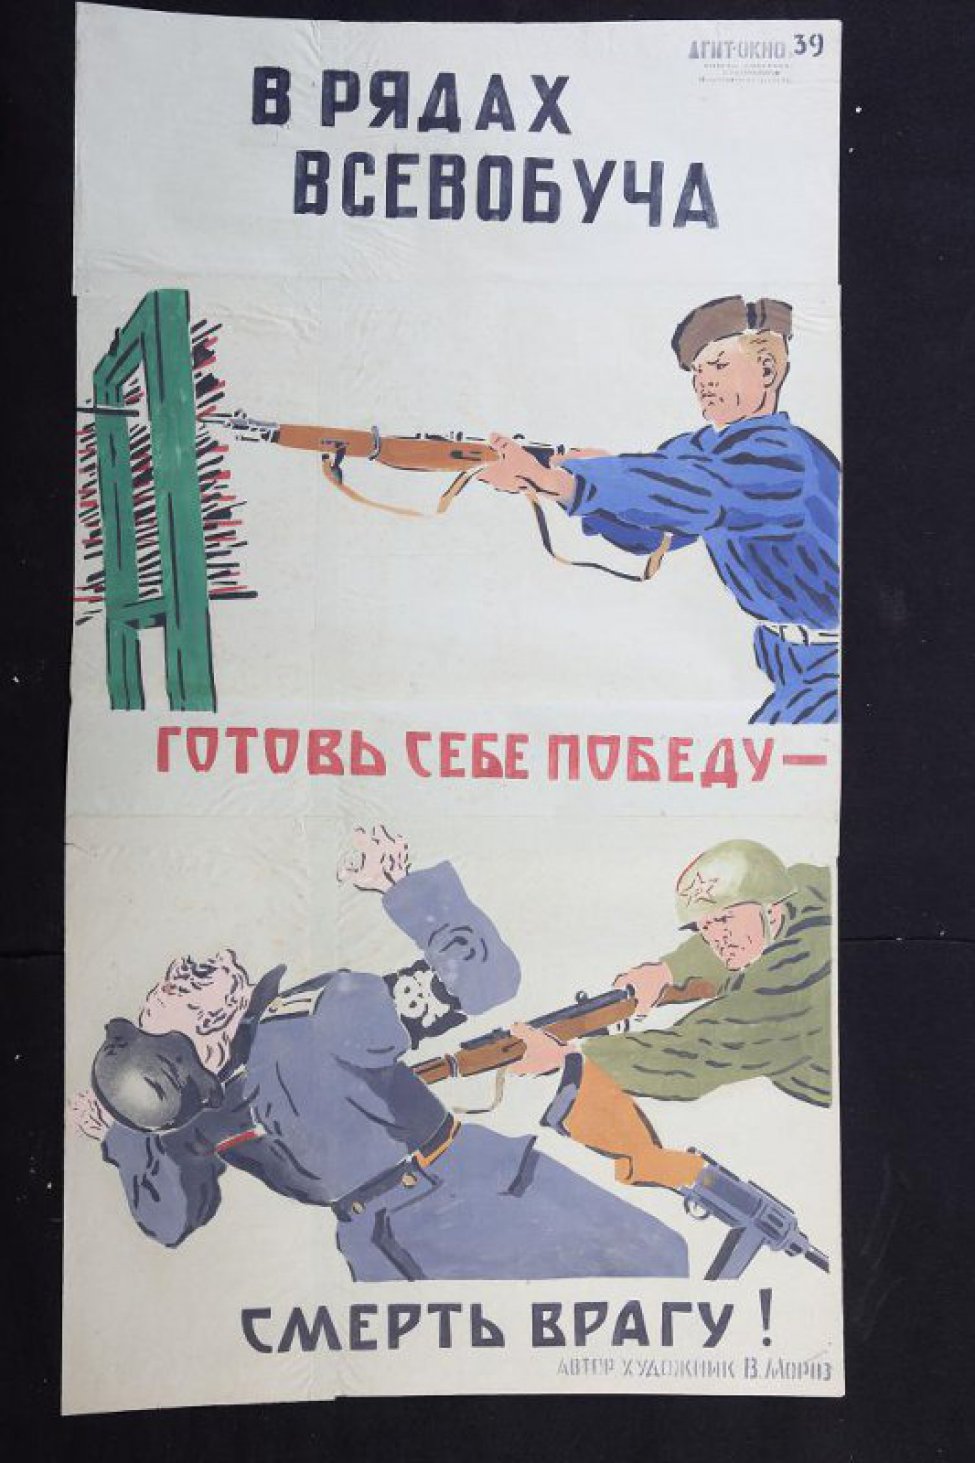 Помещено 2 рисунка: 1) урок штыкового боя; 2) боец Советской Армии прокалывает фашиста, текст: "смерть врагу!"